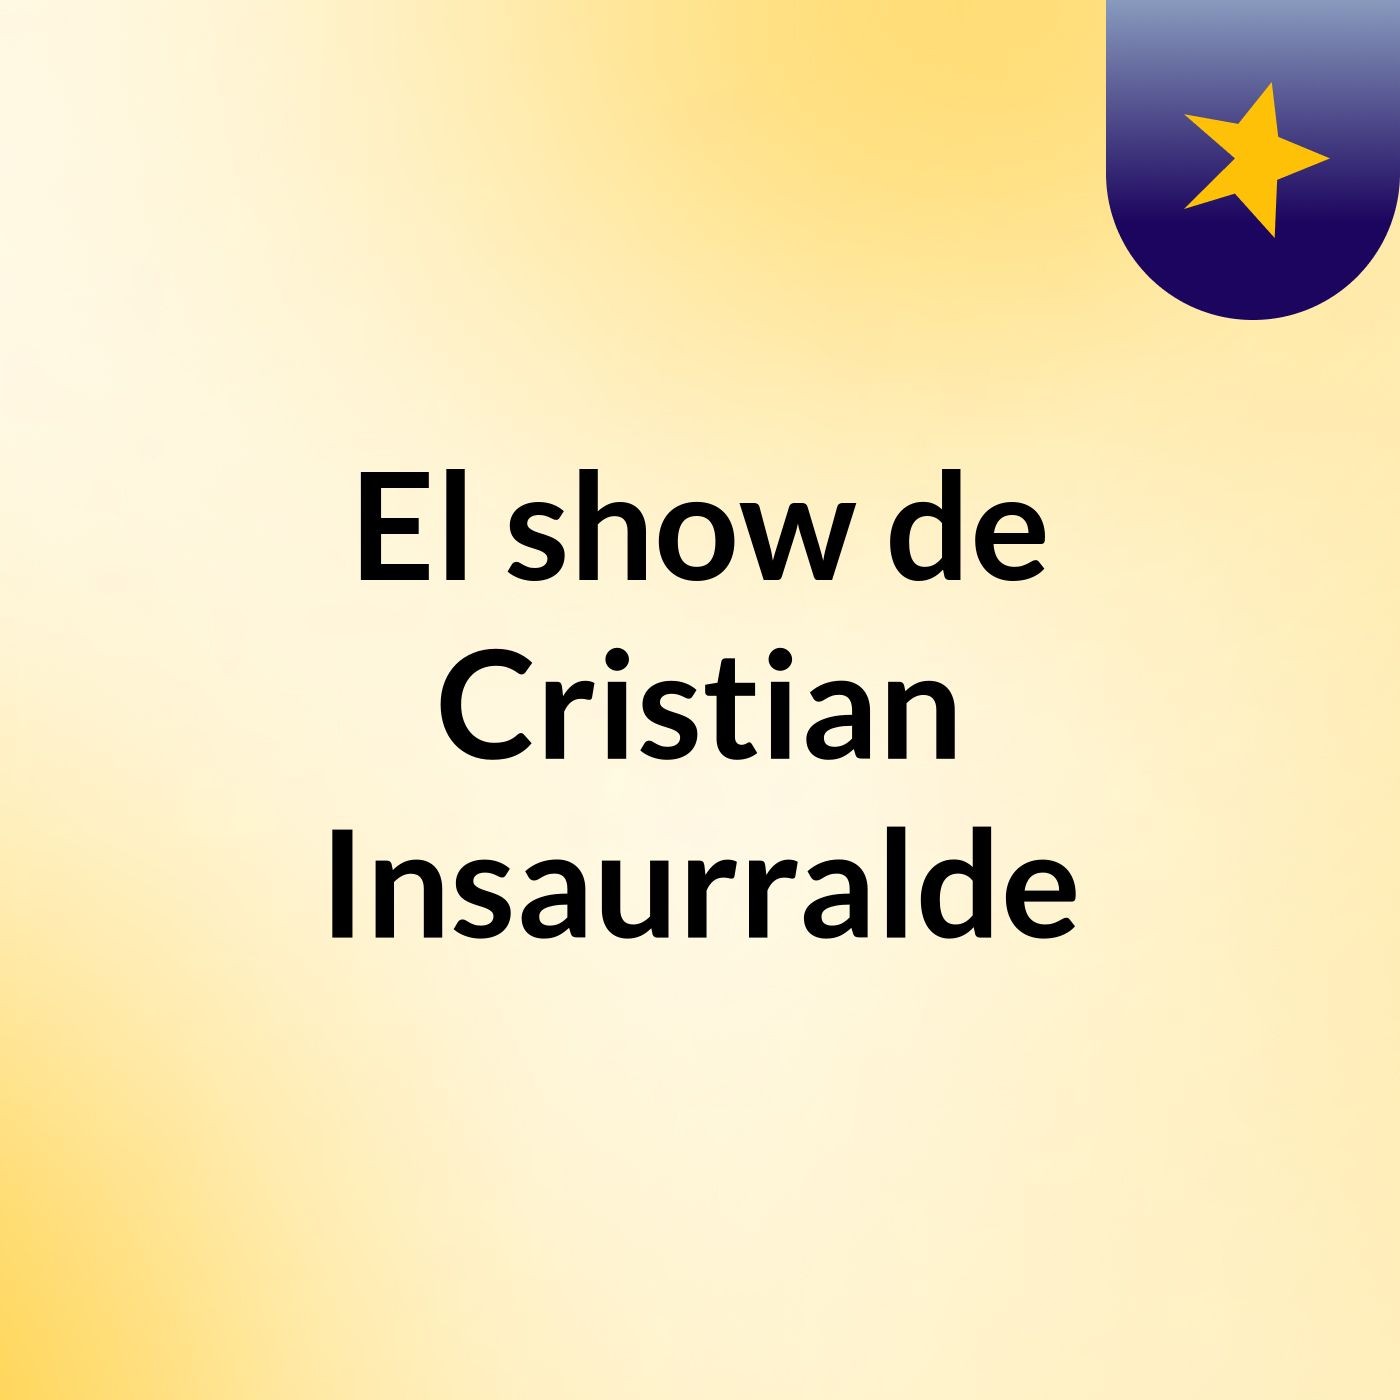 El show de Cristian Insaurralde